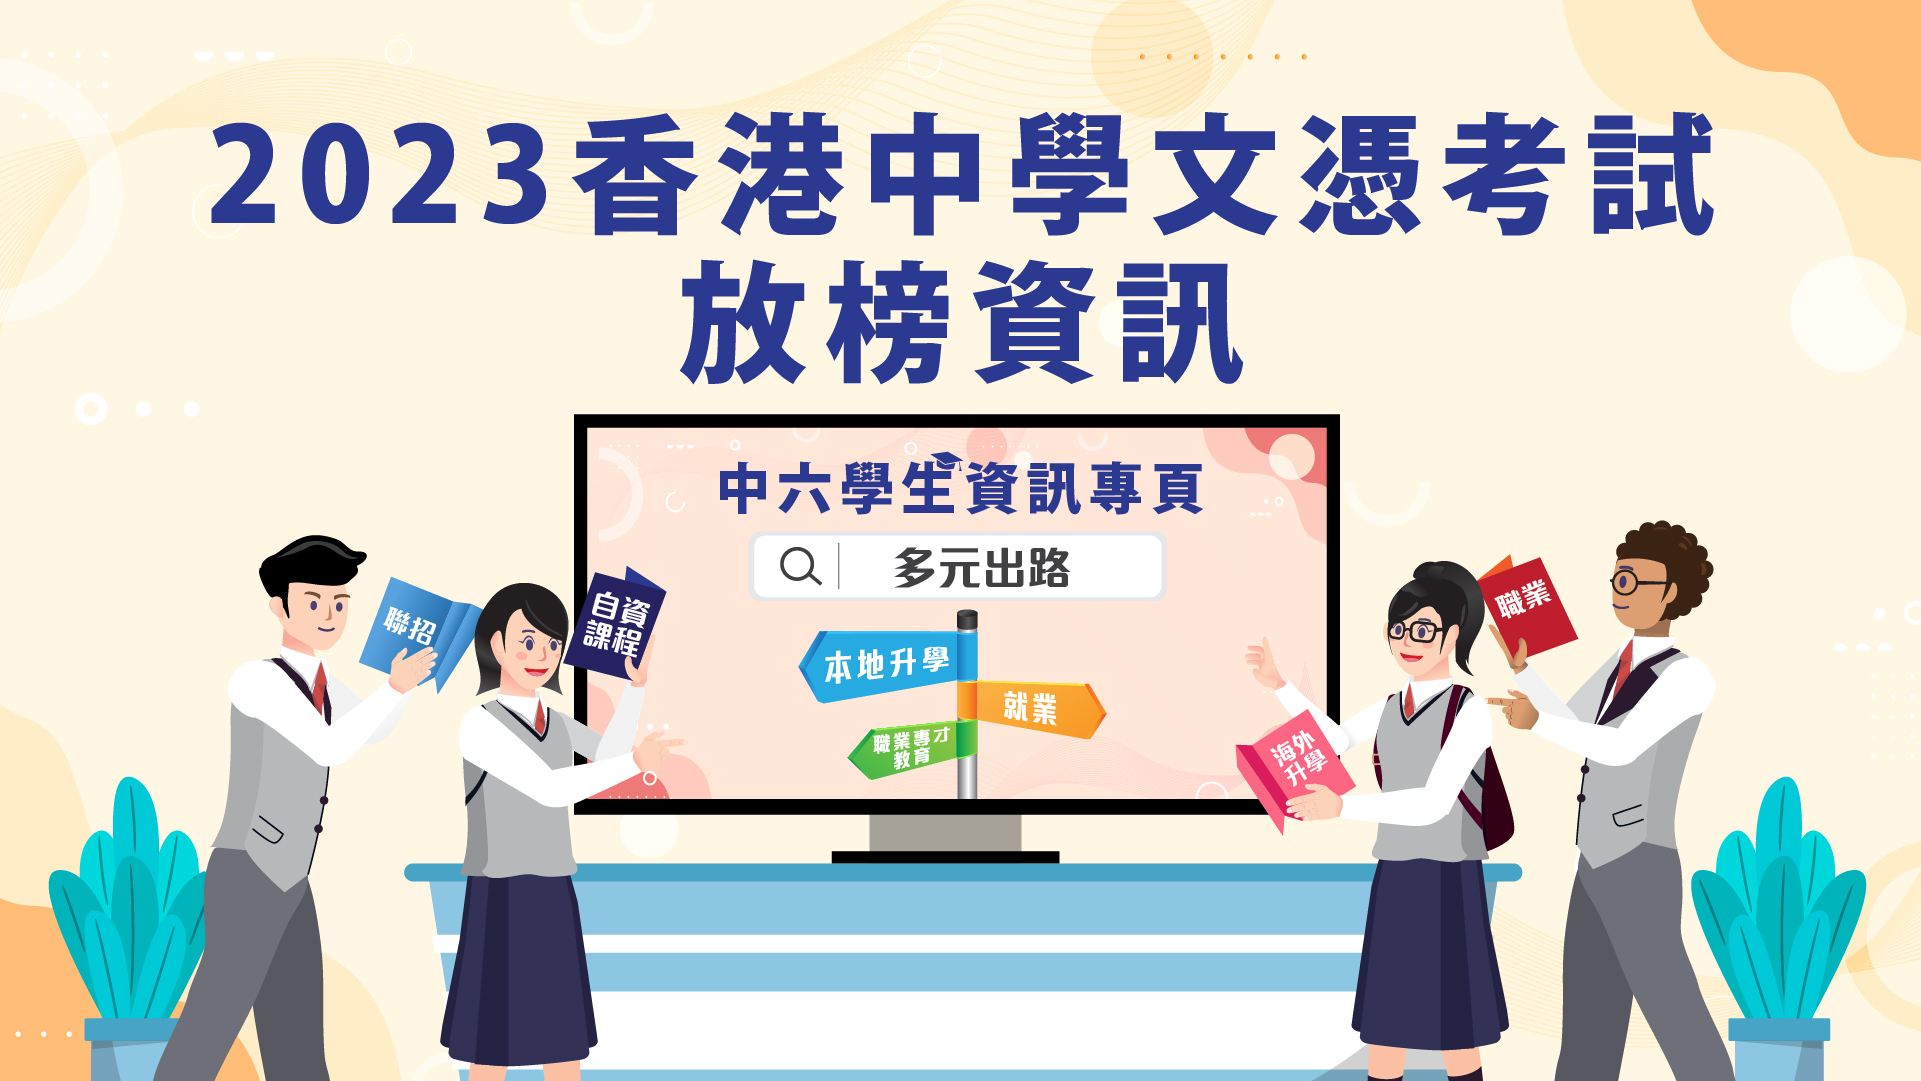 2024 香港中學文憑考試放榜資訊